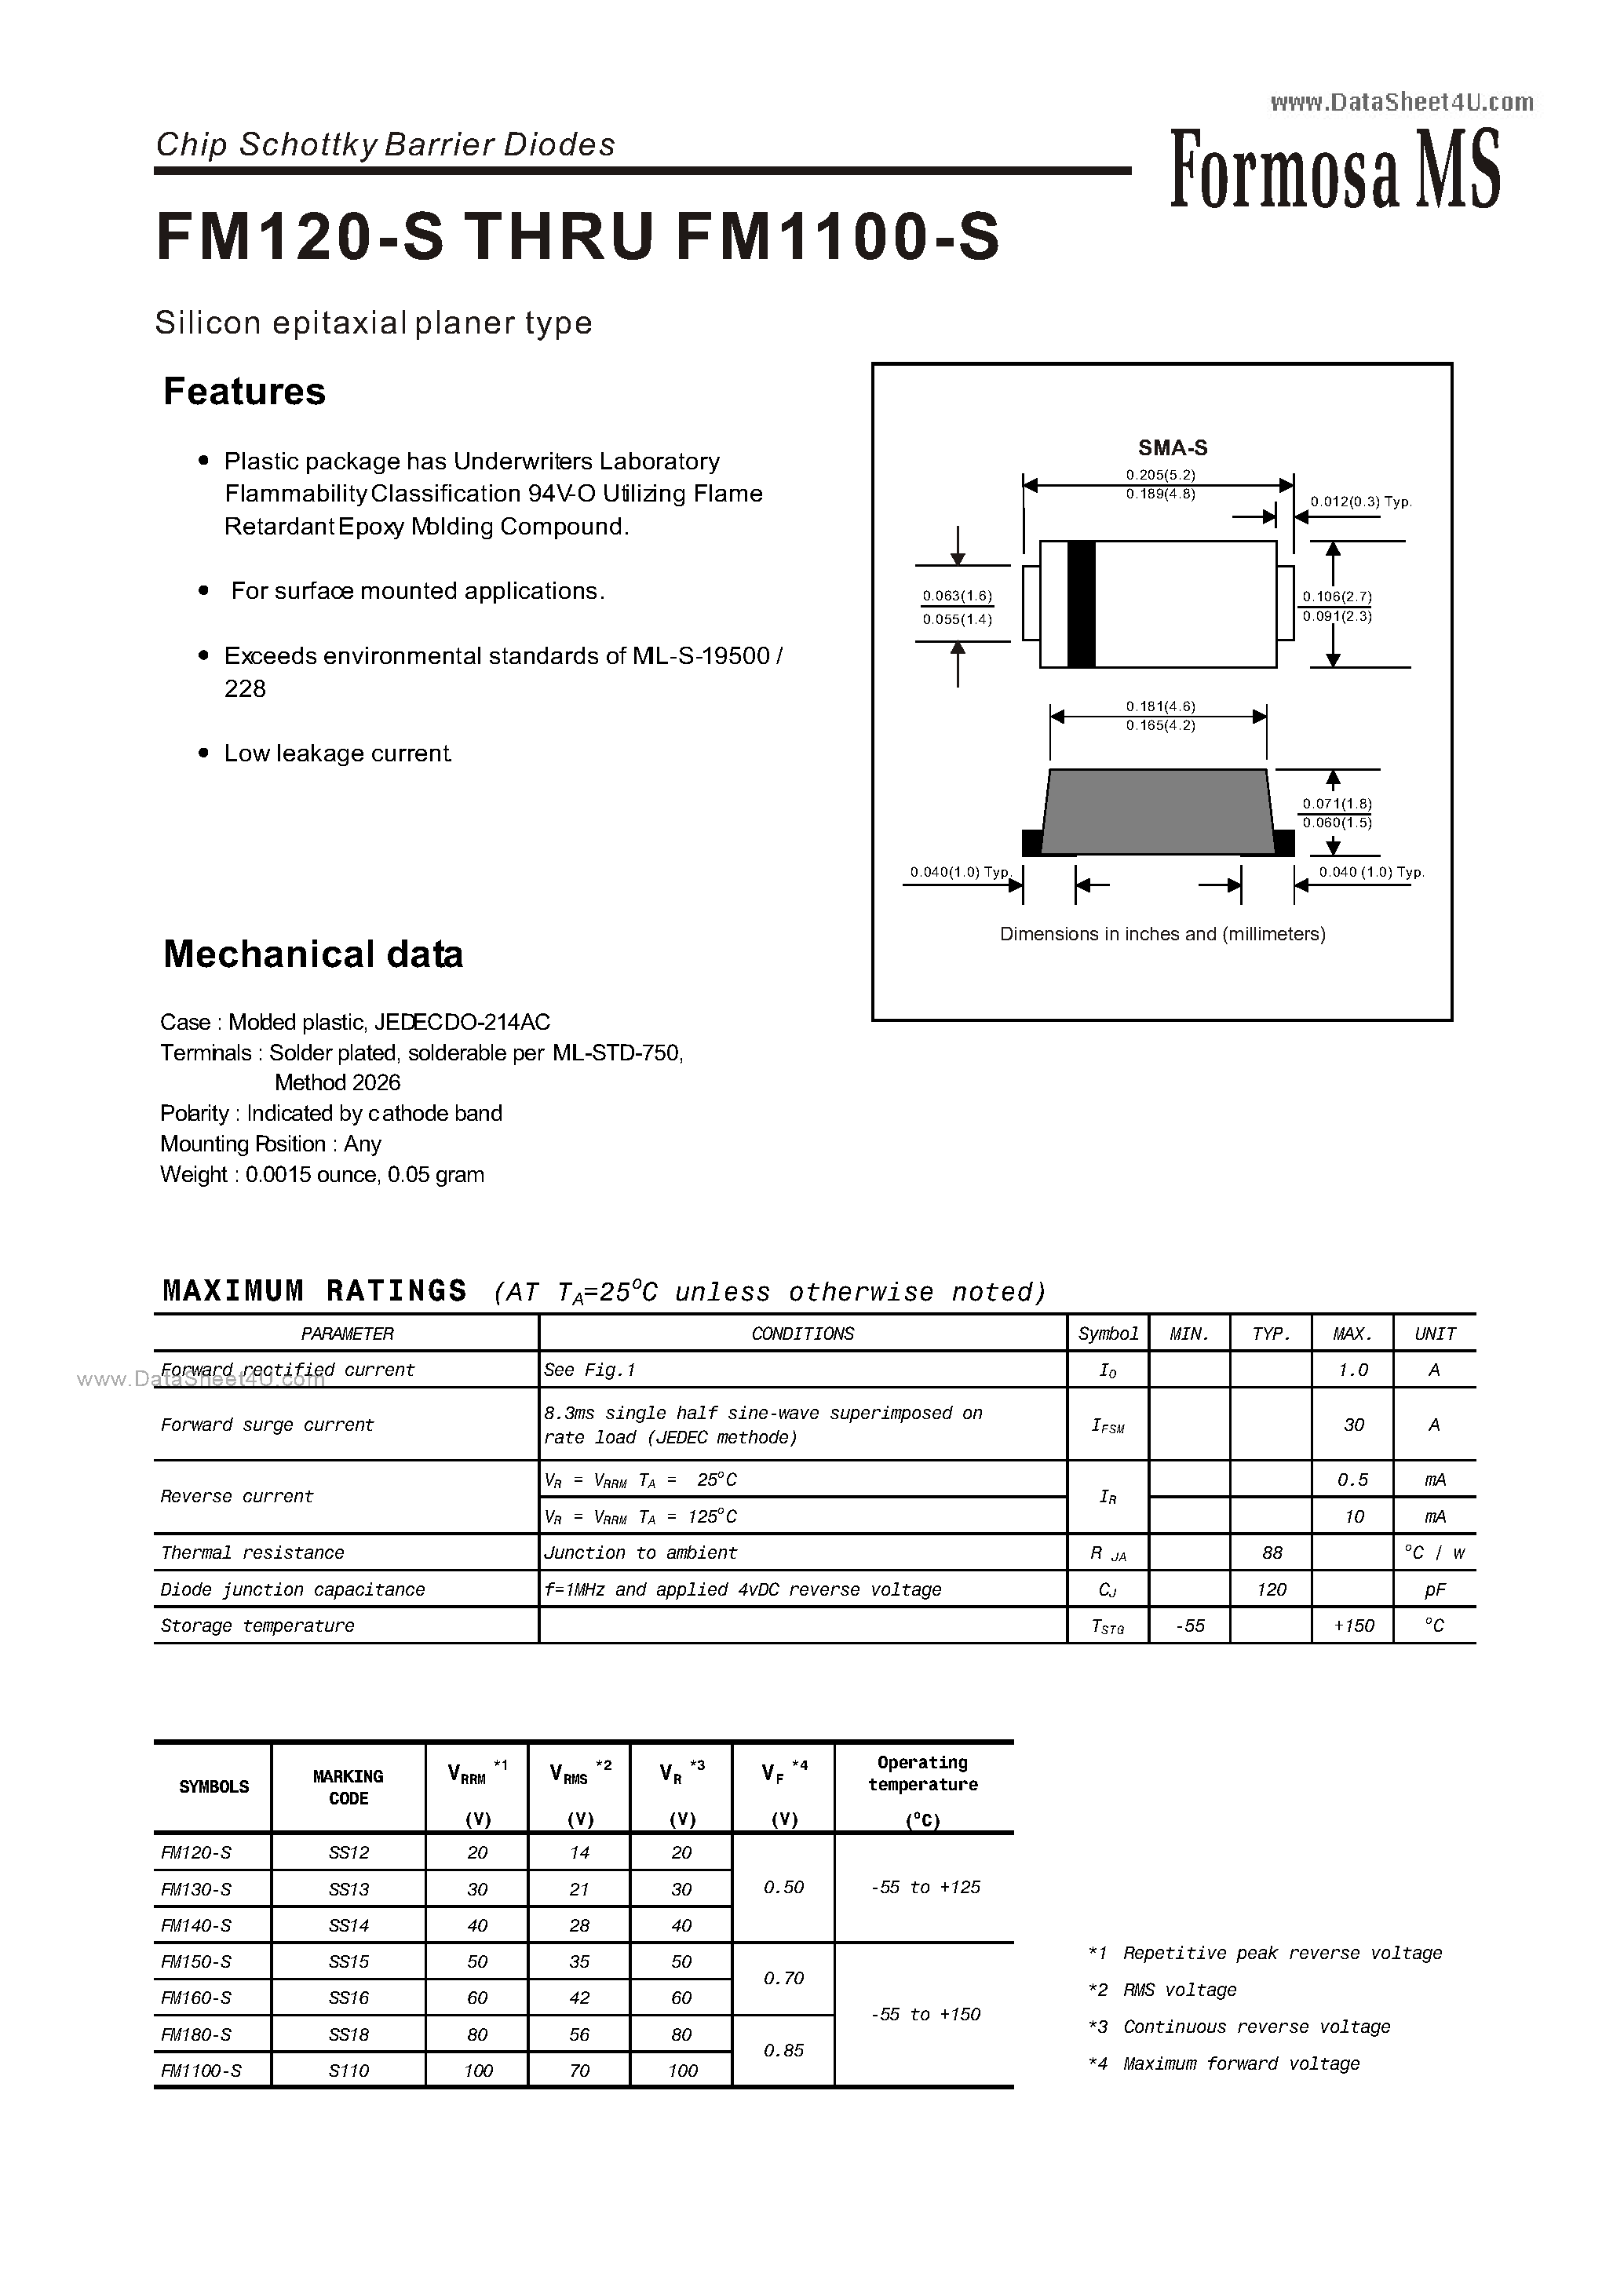 Datasheet FM1100-S - (FM120-S - FM1100-S) Chip Schottky Barrier Diodes page 1